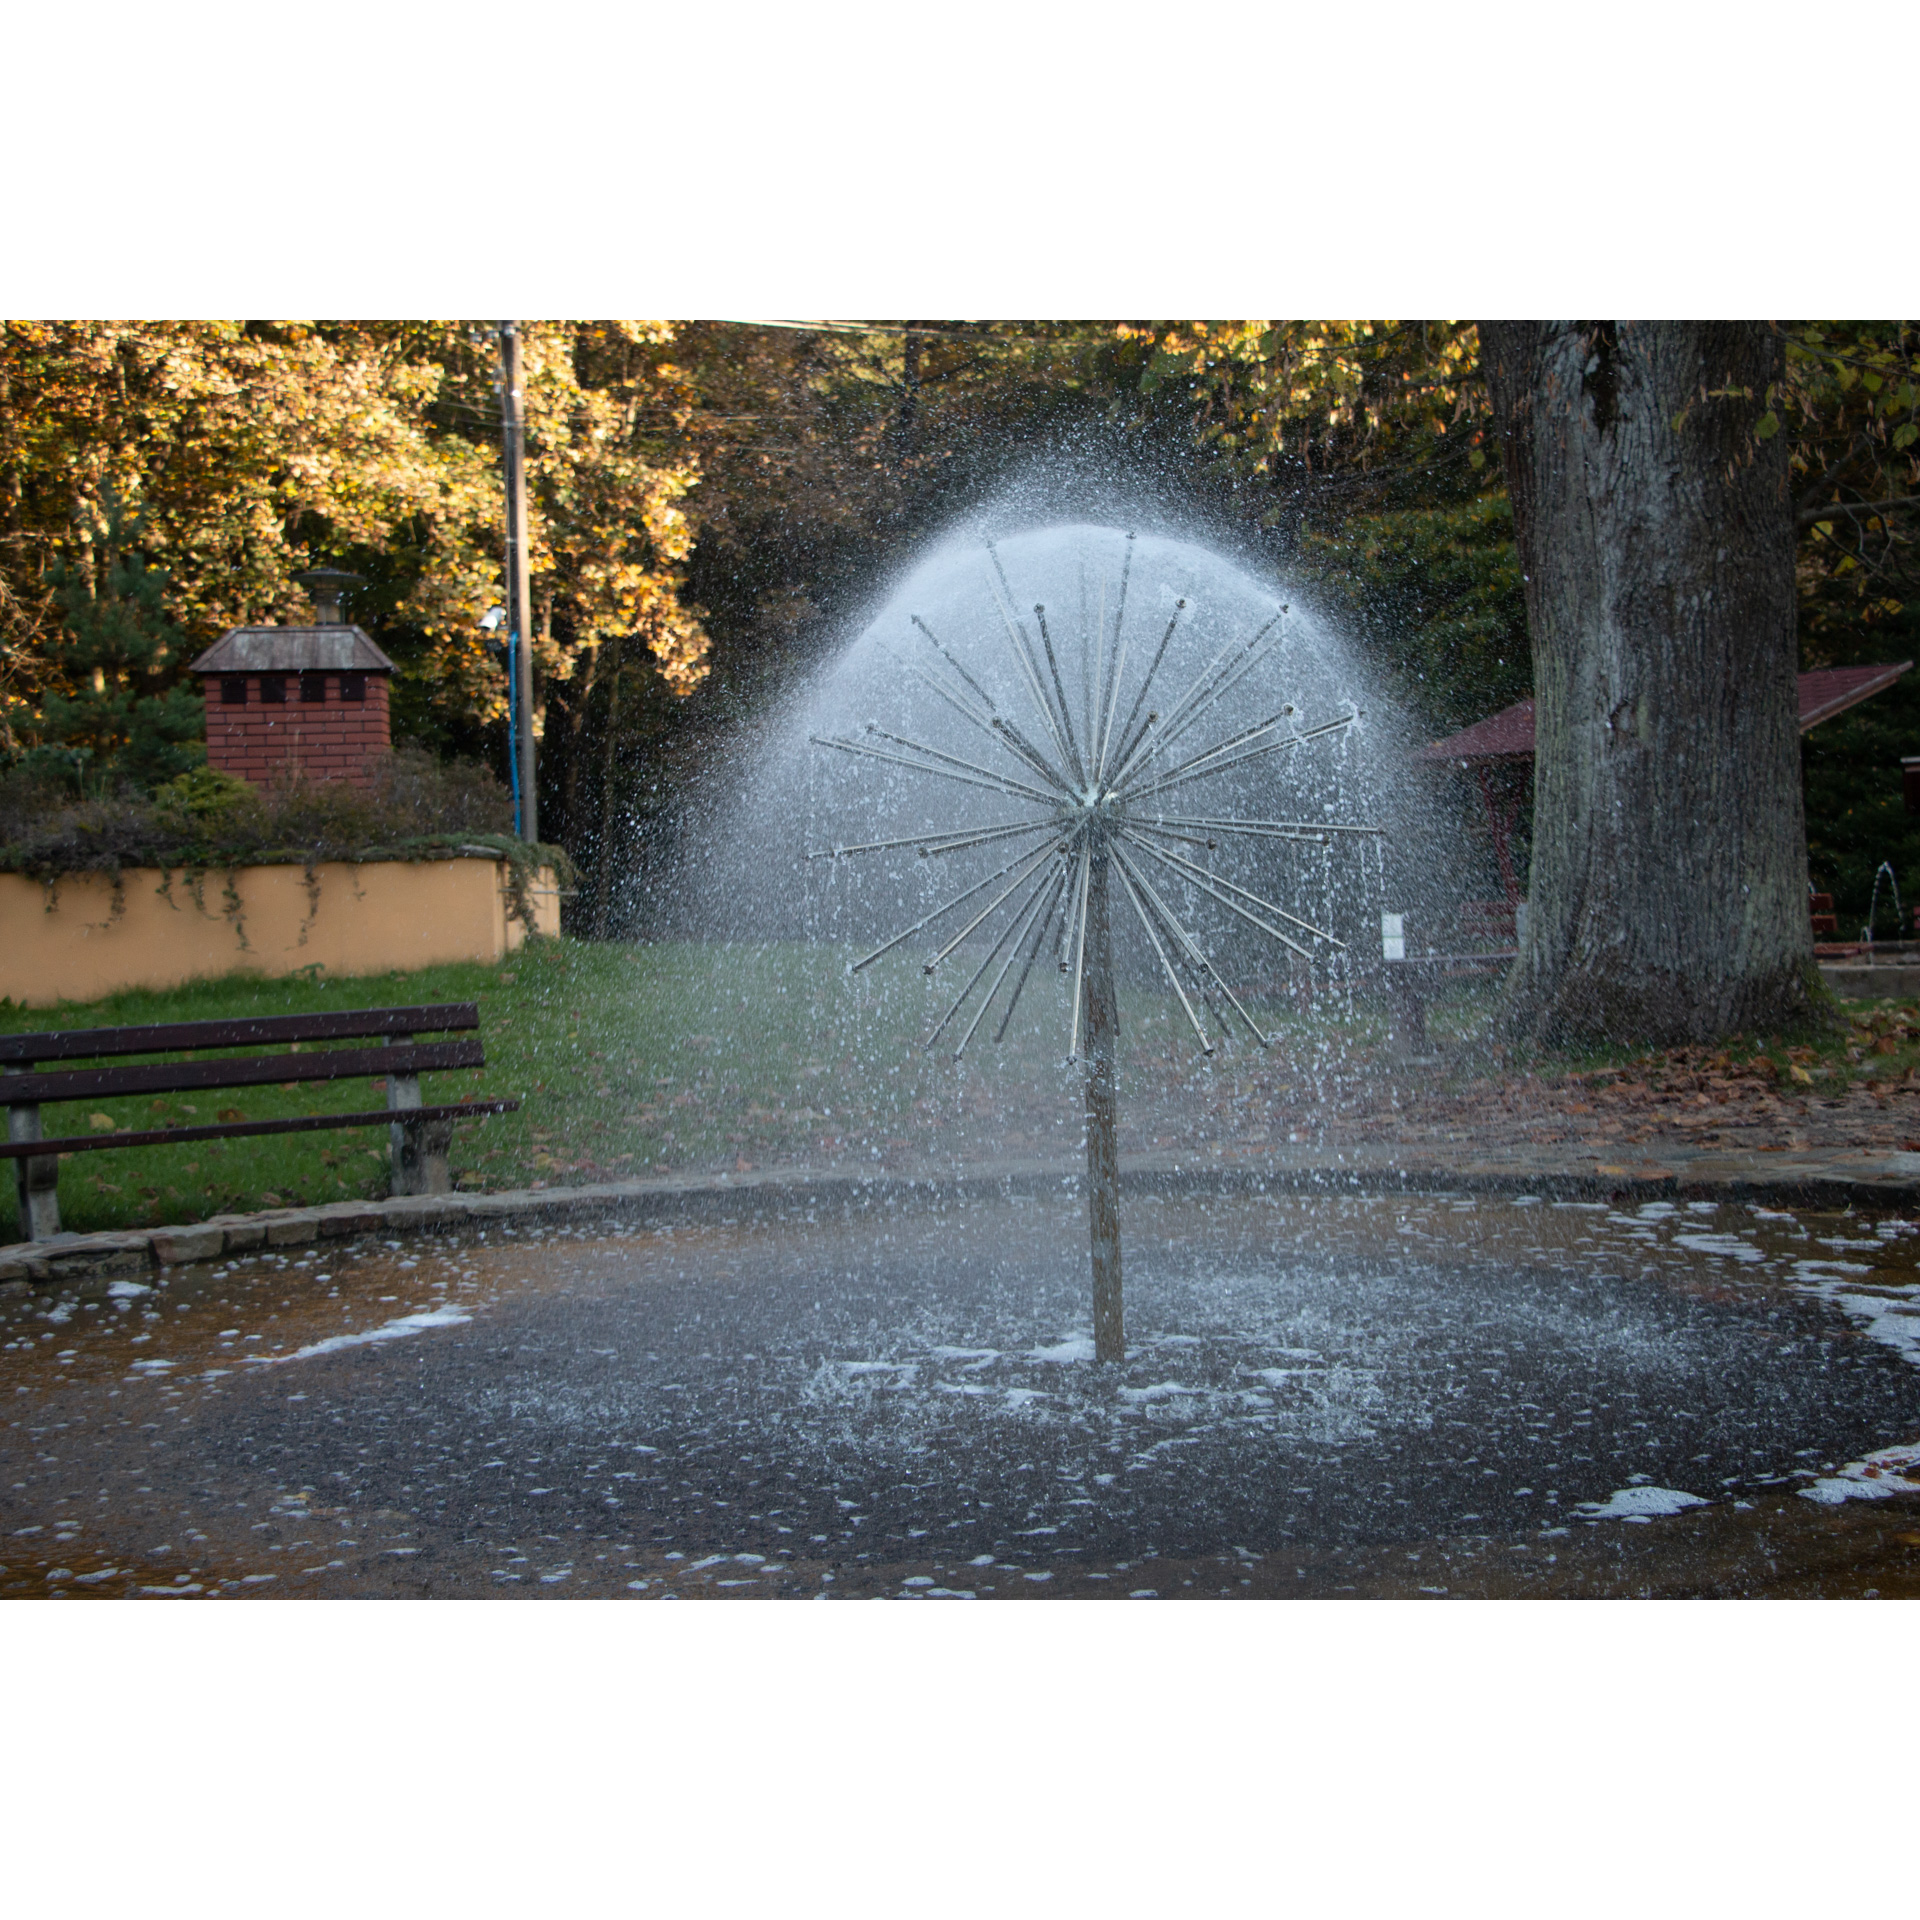 Tryskająca wodą fontanna z dyszą w kształcie galaktycznej kuli